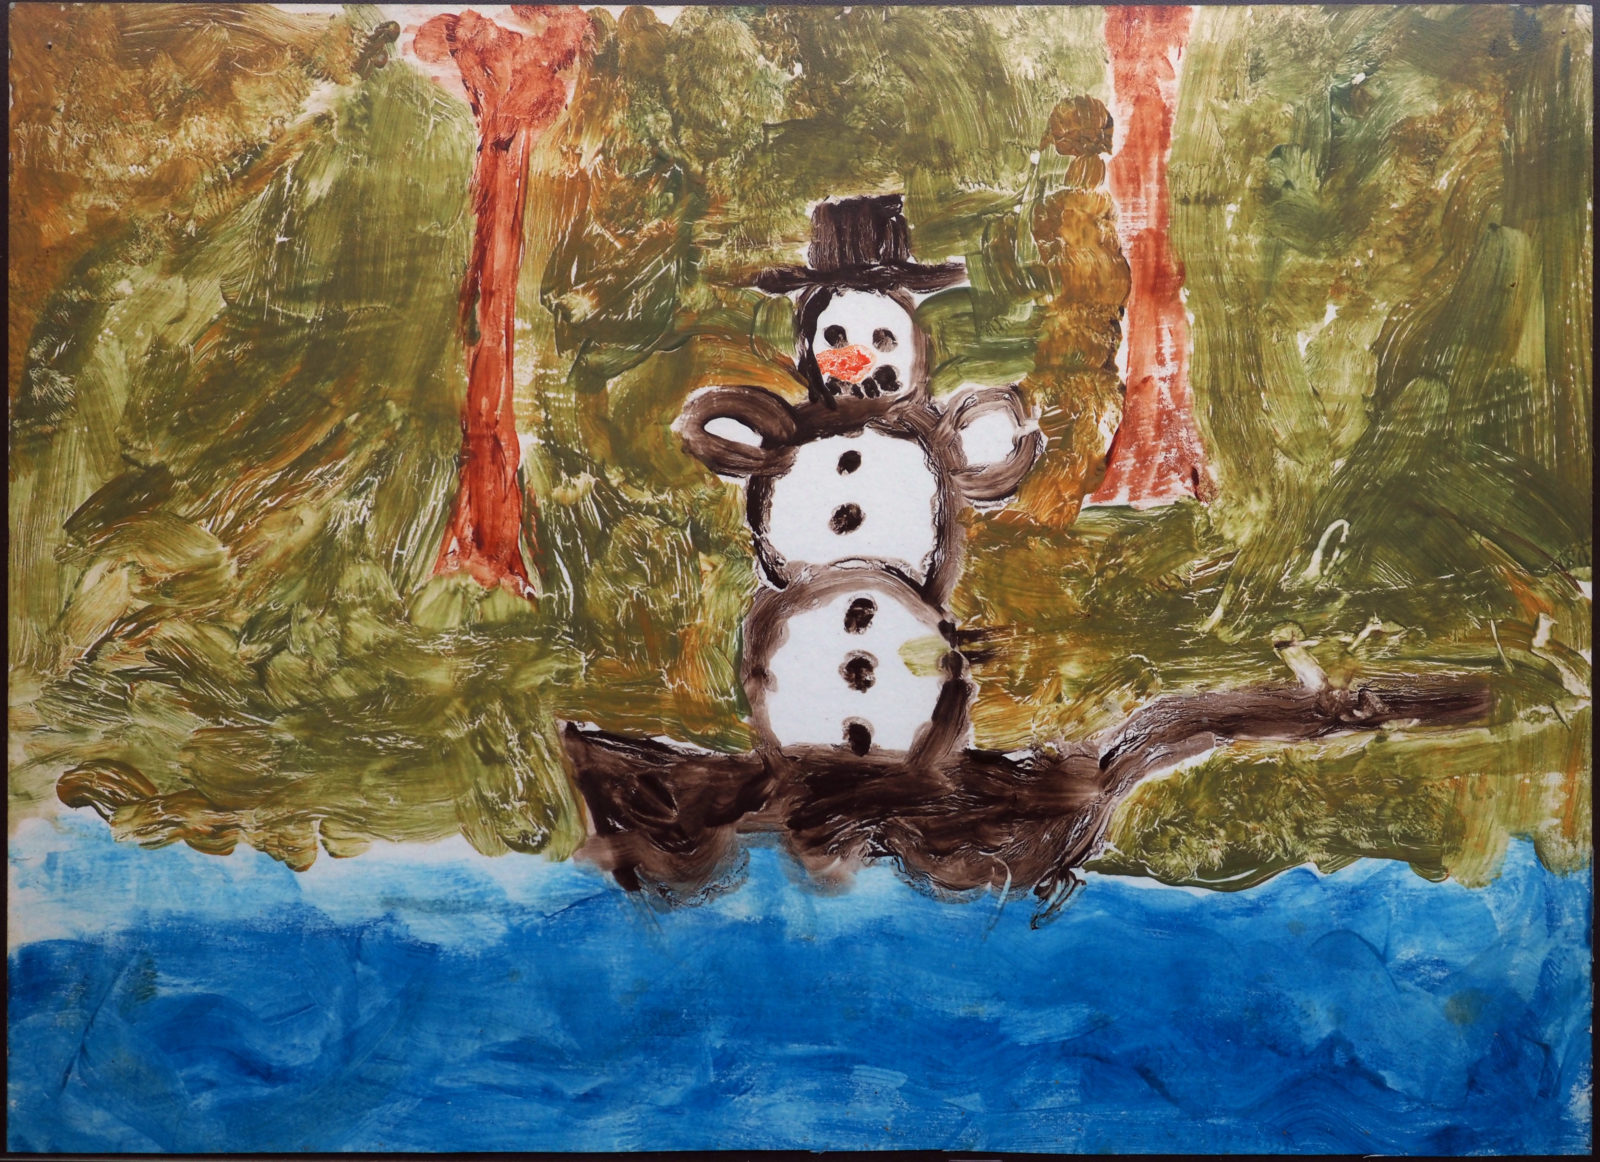 Bild von einem Schneemann in einer Bratpfanne